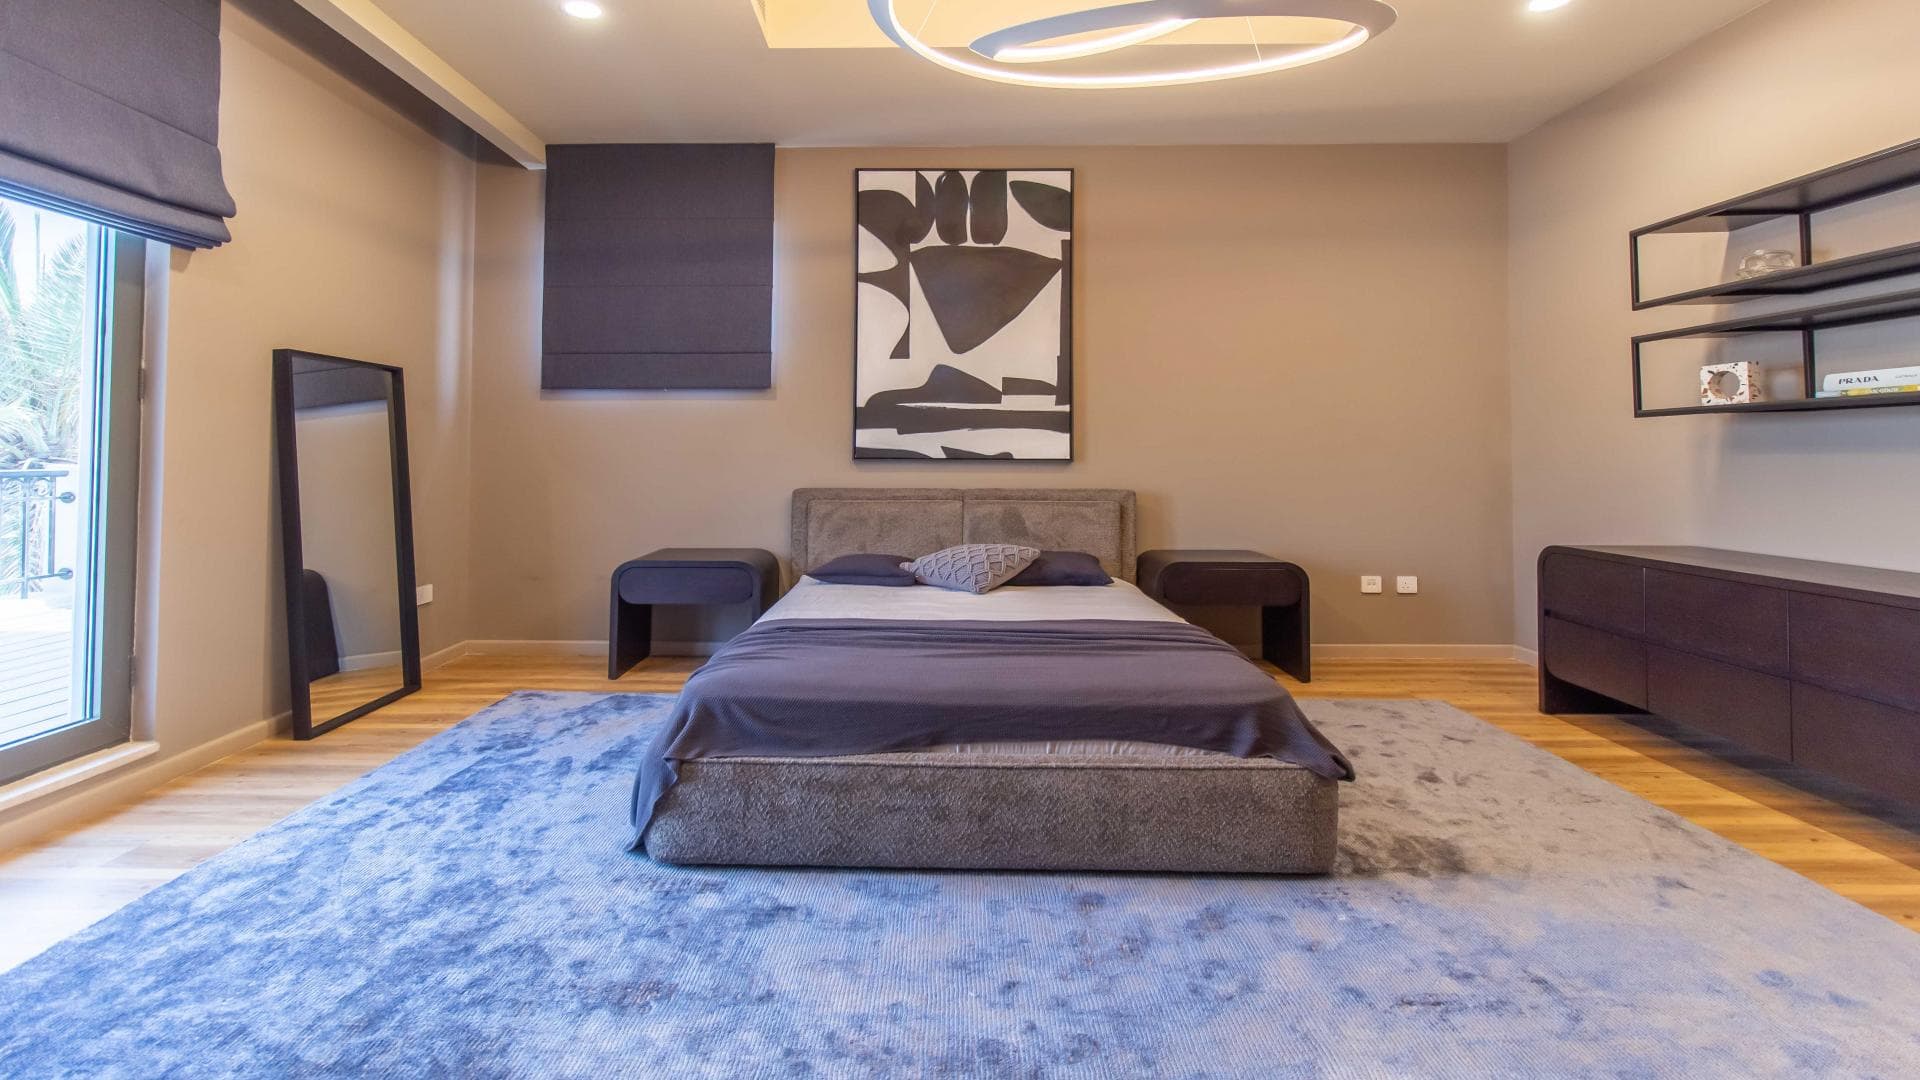 4 Bedroom Villa For Rent Mughal Lp37417 16f342c80d431000.jpg